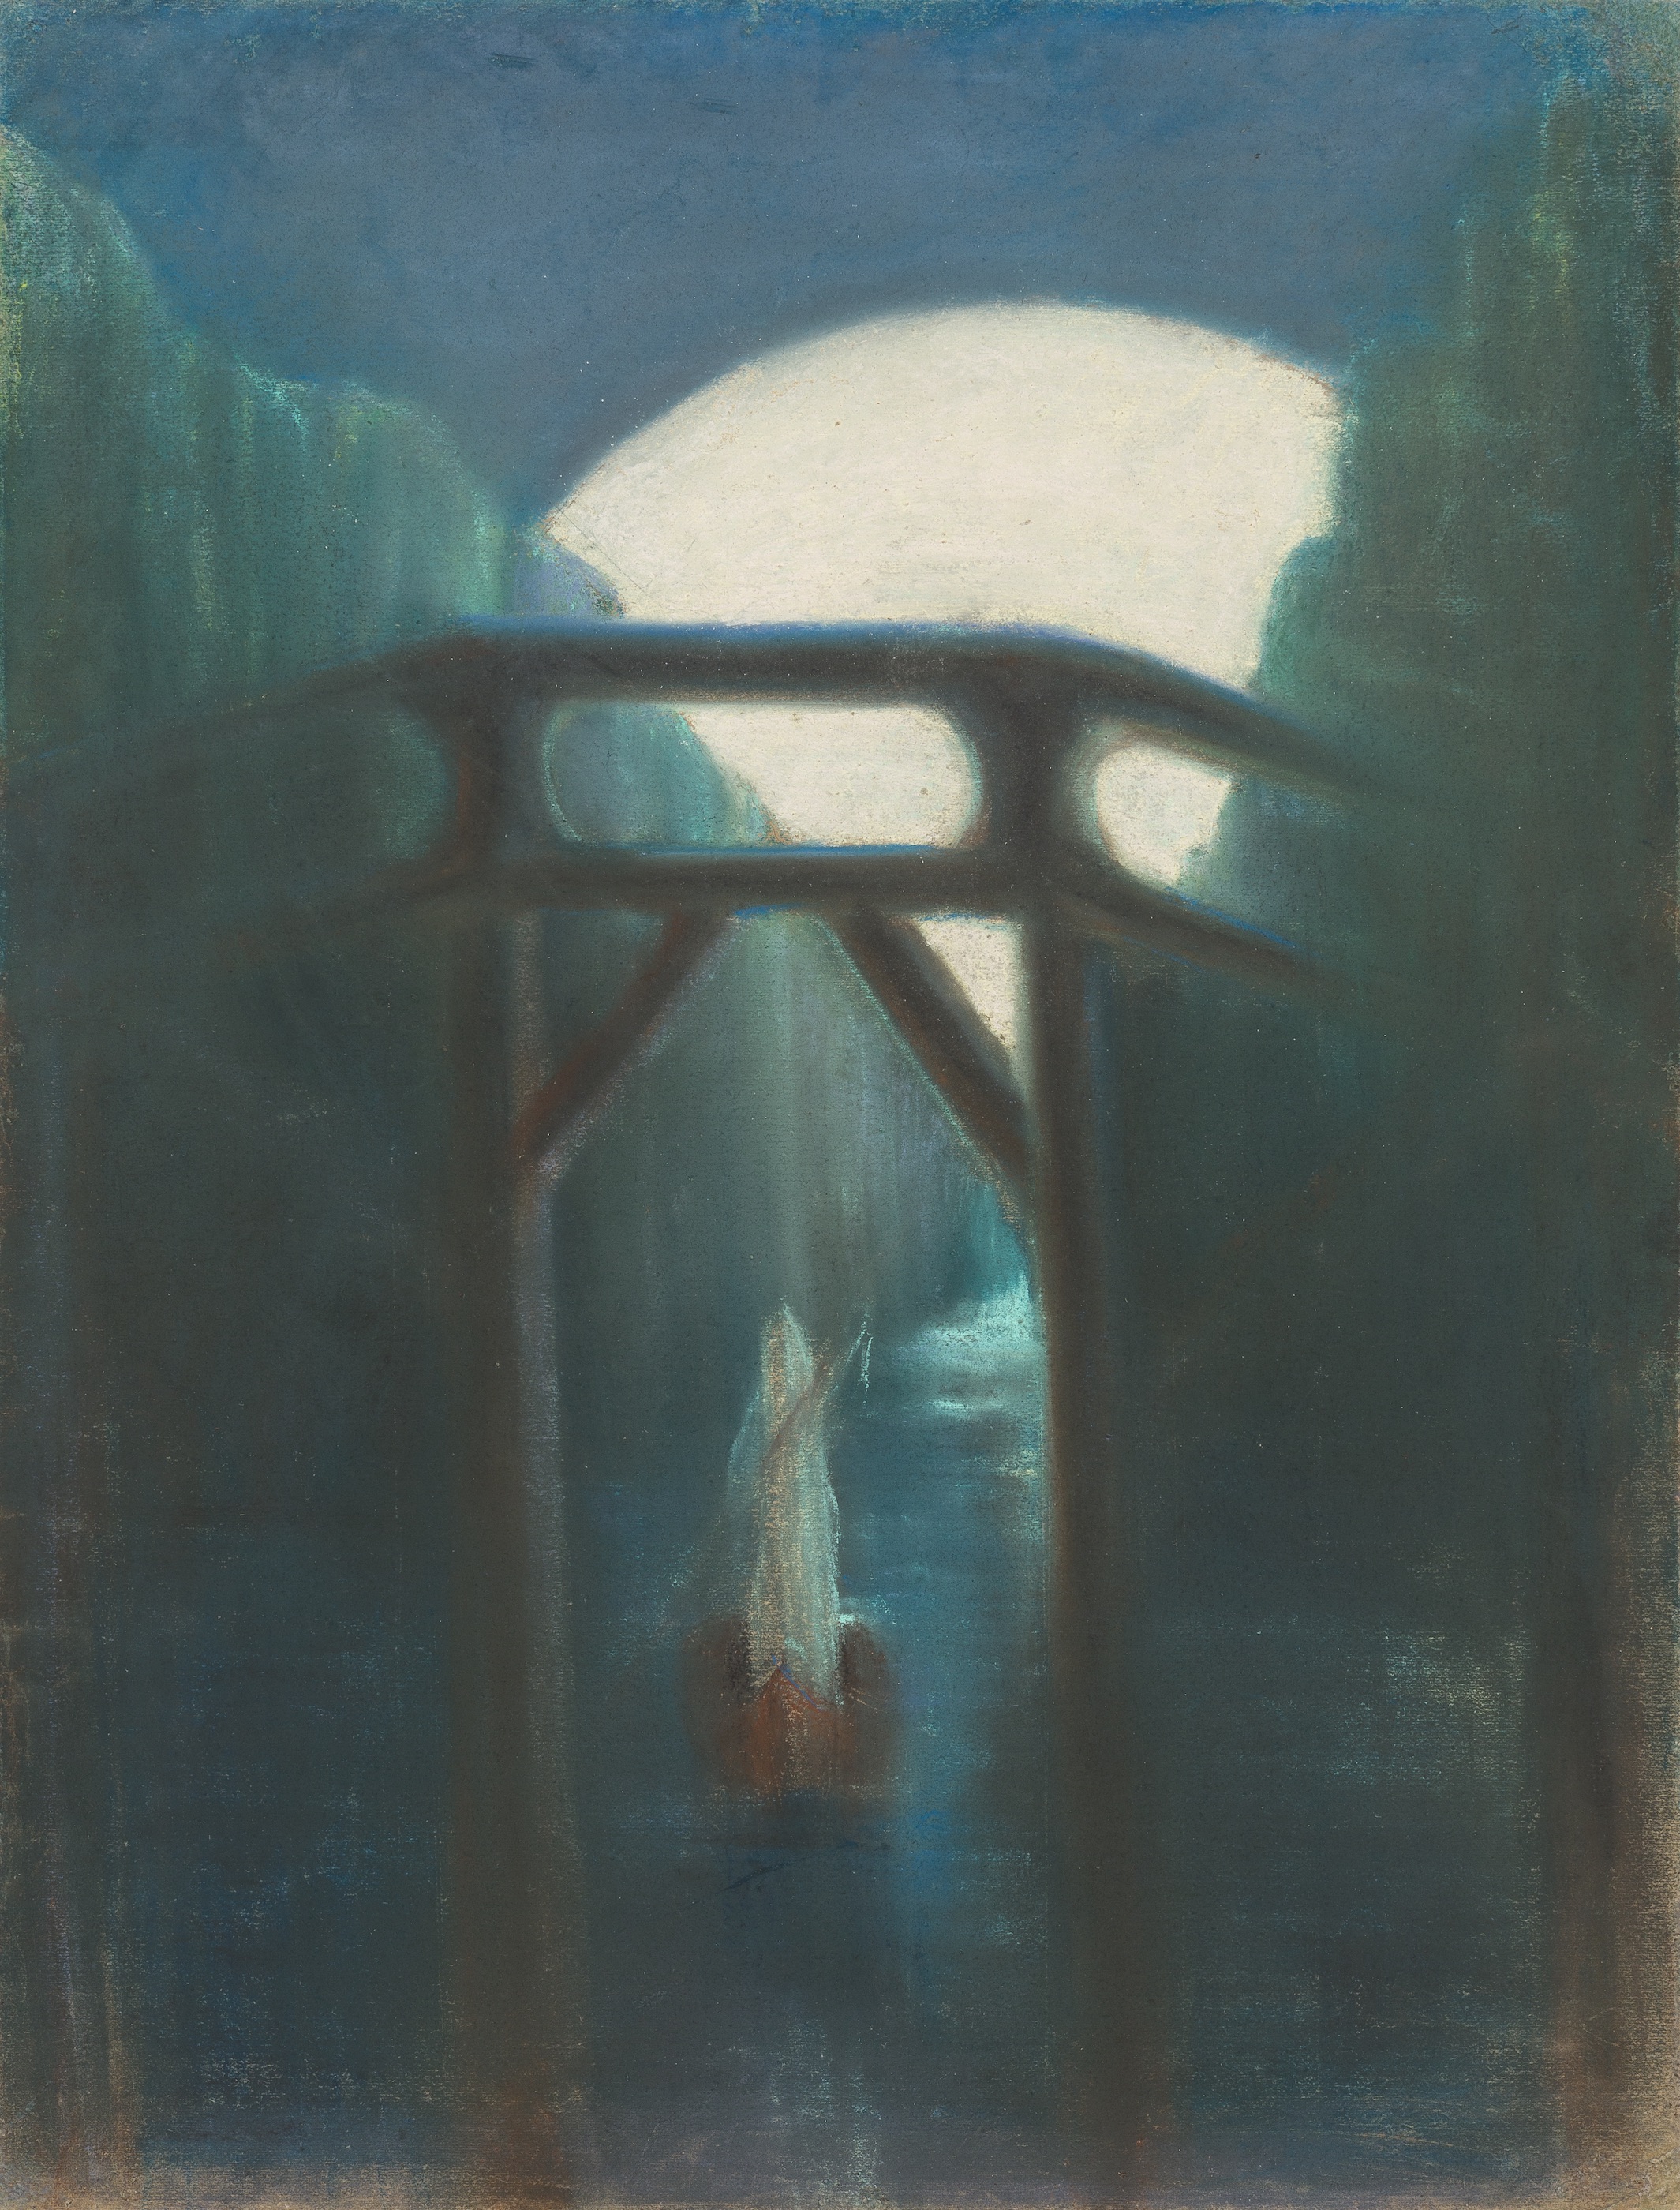 Nuit by Mikalojus Konstantinas Čiurlionis - 1905 - 73,5 x 56 cm 